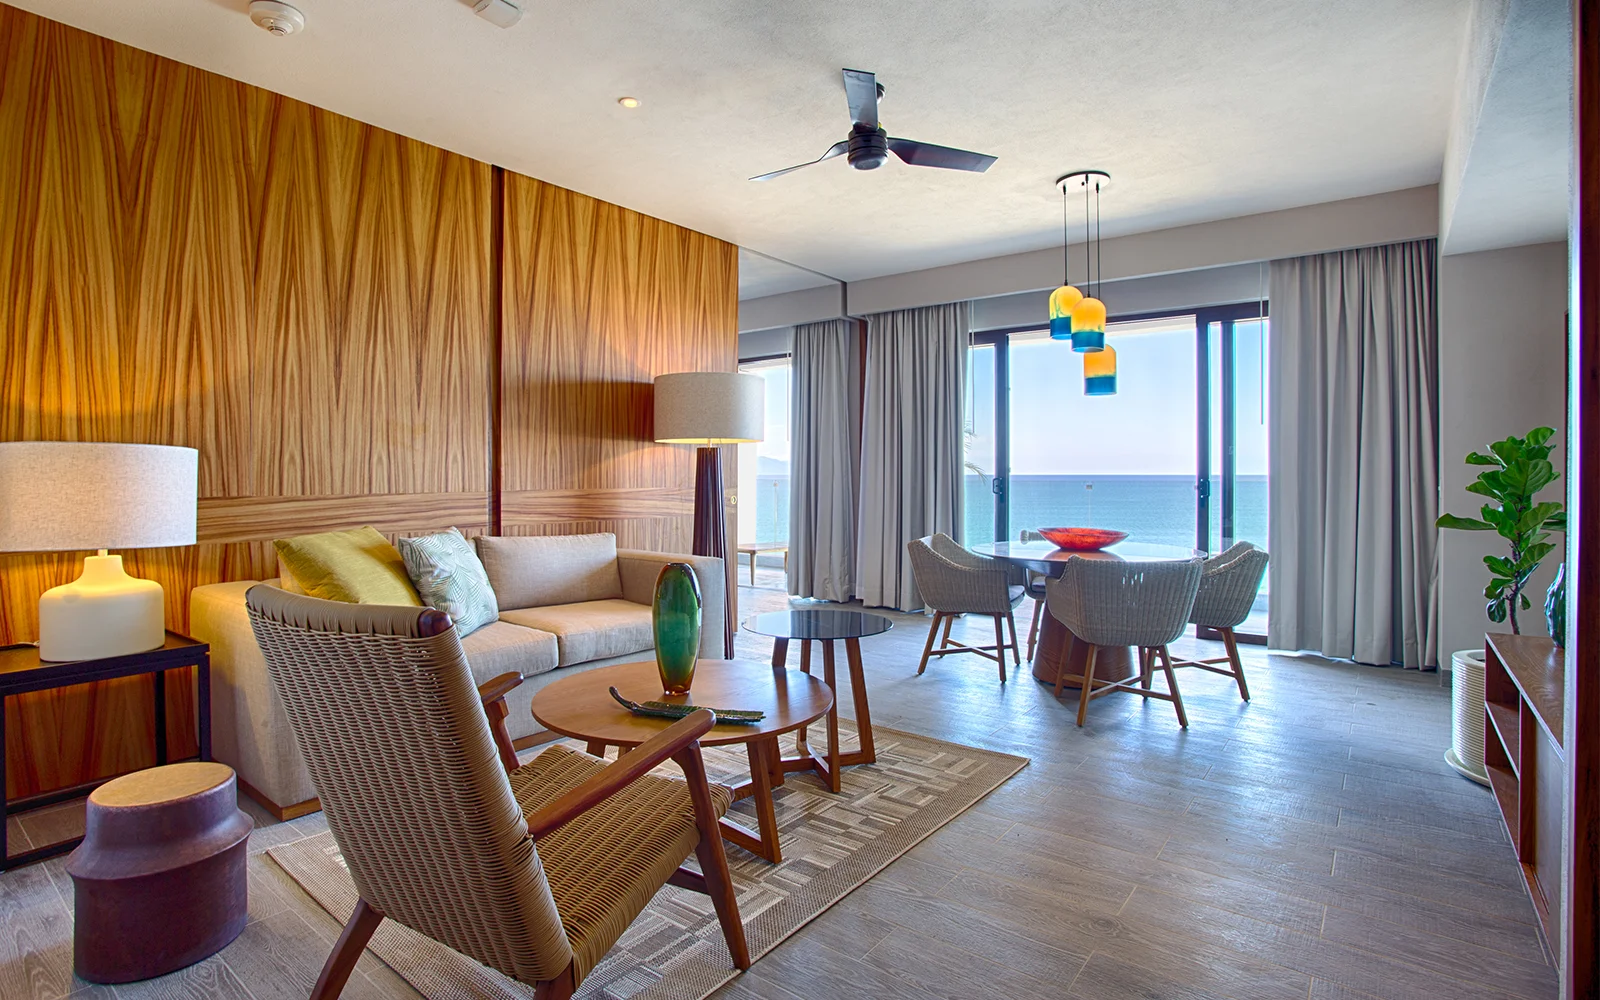 Armony Suite, Two Bedrooms Armony Luxury Resort & Spa